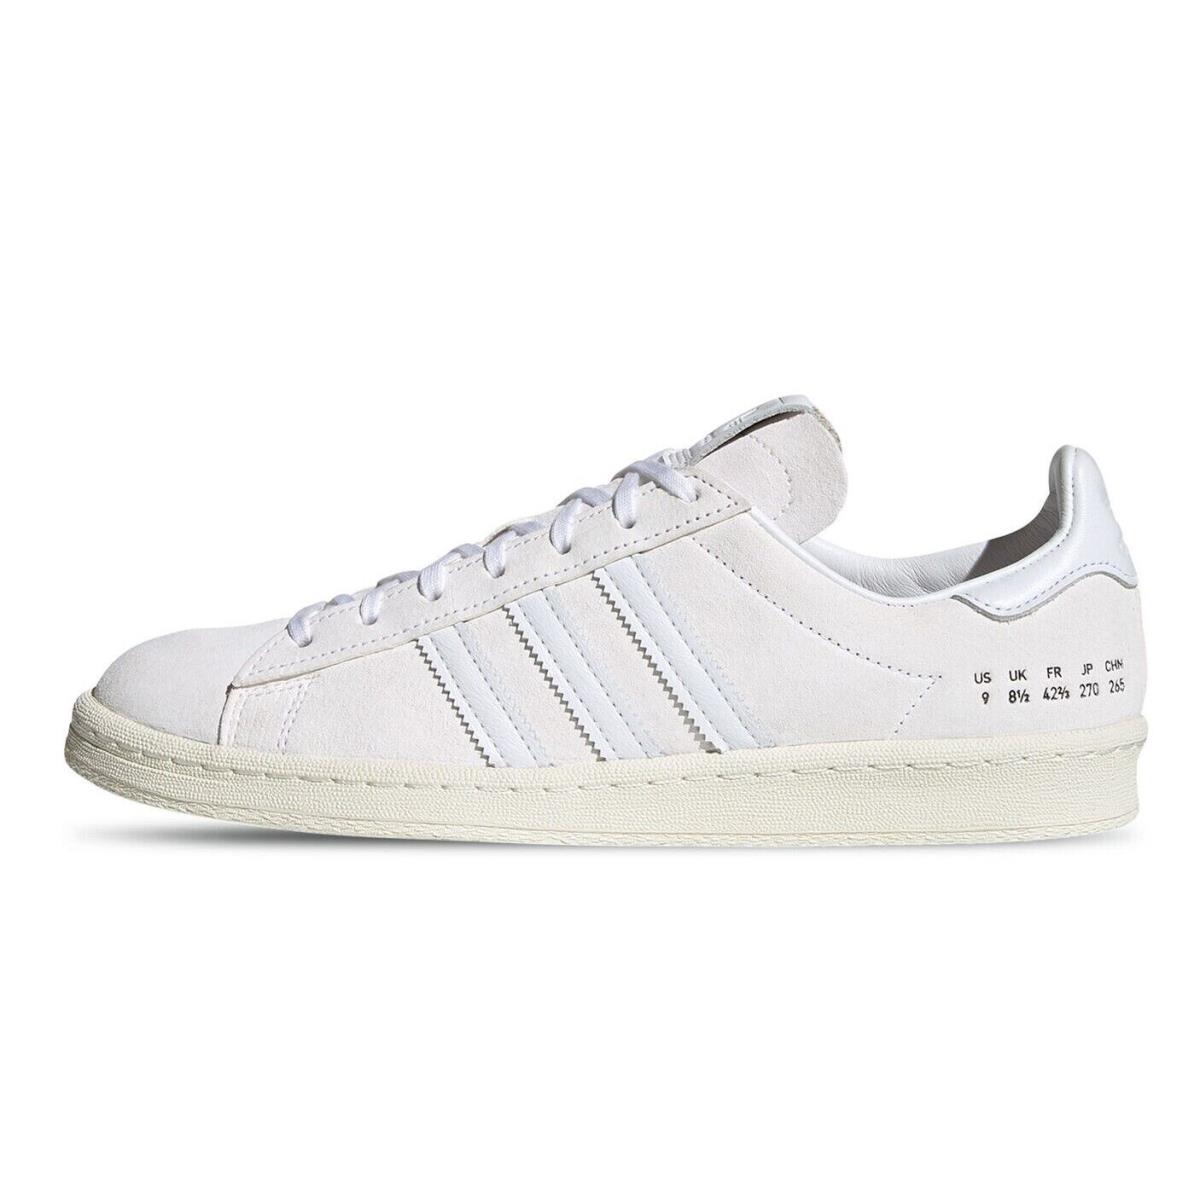 Adidas Campus 80S Premium White Leather Off White Suede FY5467 Men`s